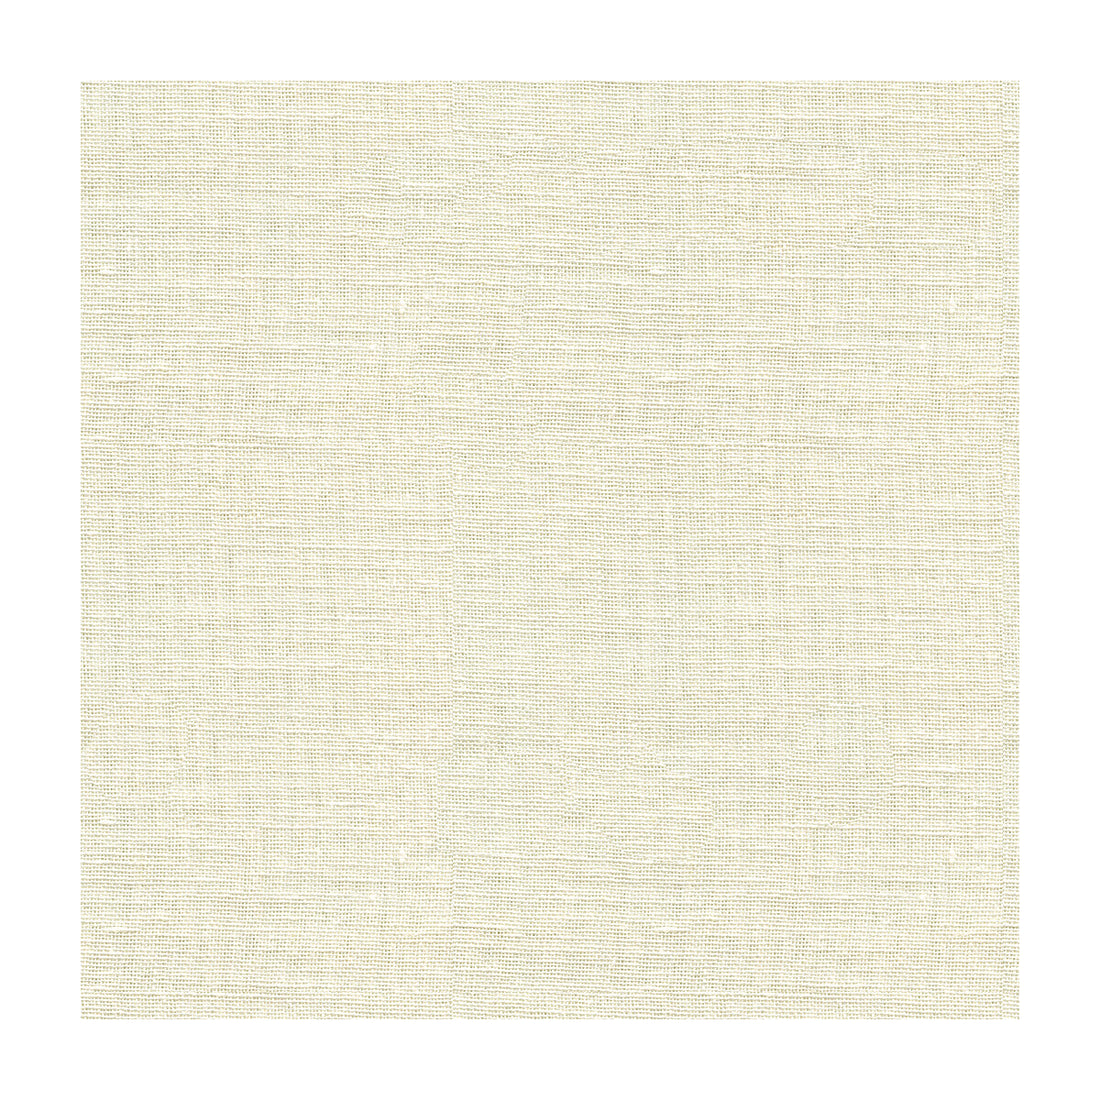 Kravet Basics fabric in 8620-101 color - pattern 8620.101.0 - by Kravet Basics